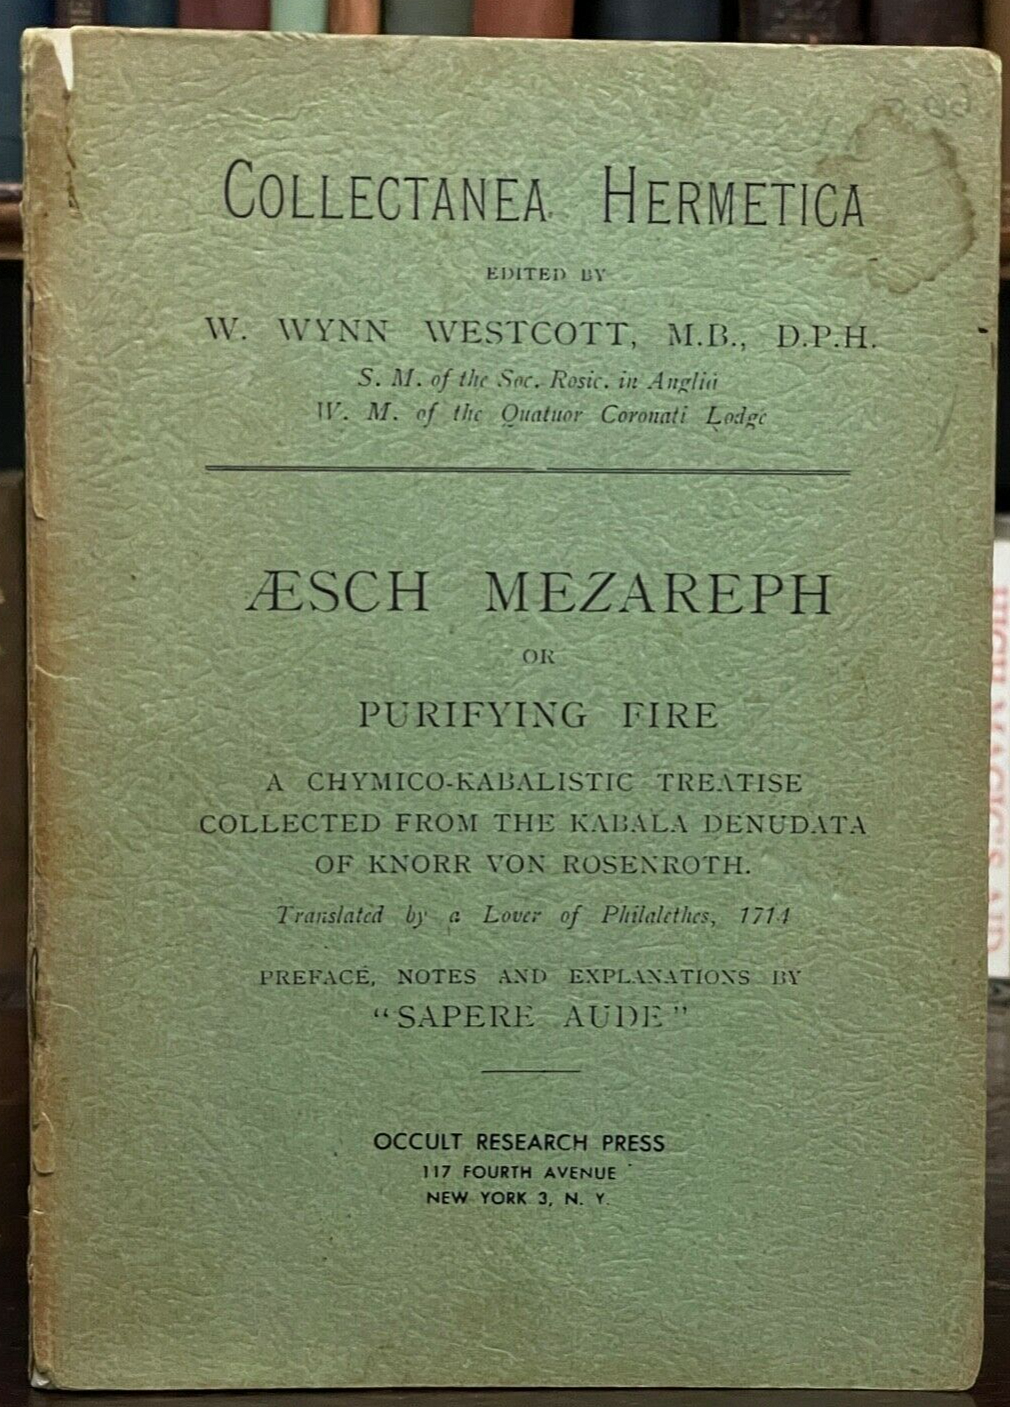 AESCH MEZAREPH OR PURIFYING FIRE - WILLIAM W. WESTCOTT, 1950s - KABBALAH ALCHEMY